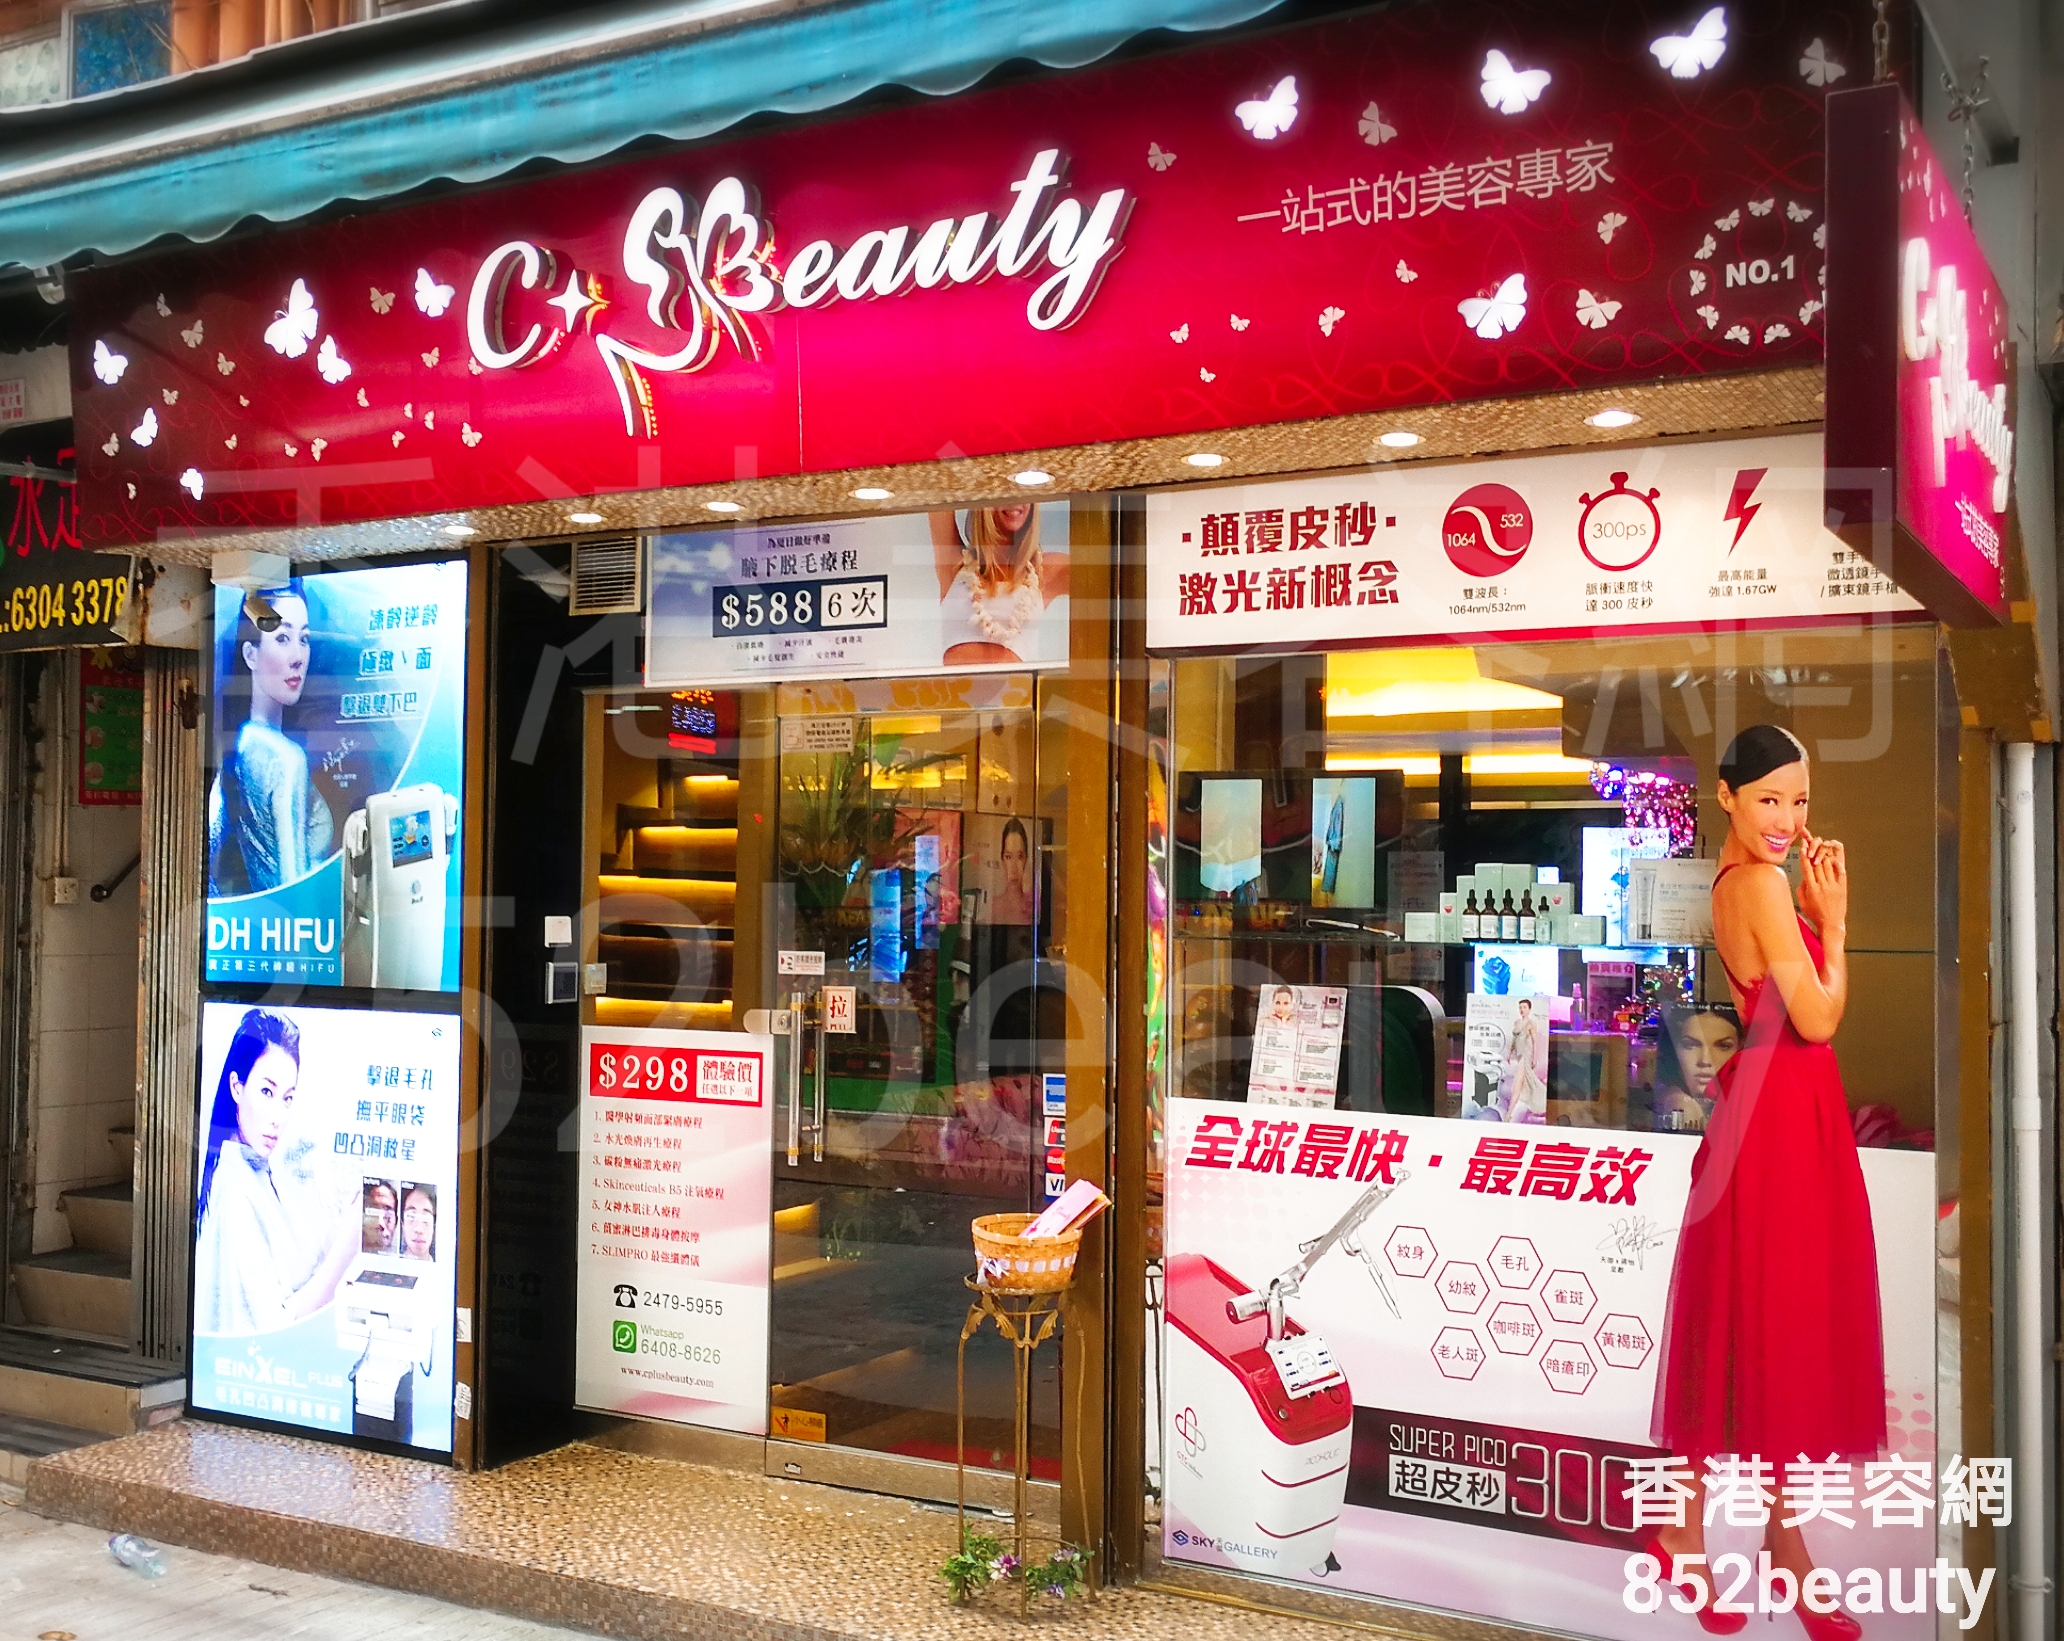 香港美容網 Hong Kong Beauty Salon 美容院 / 美容師: C+Beauty (總店)